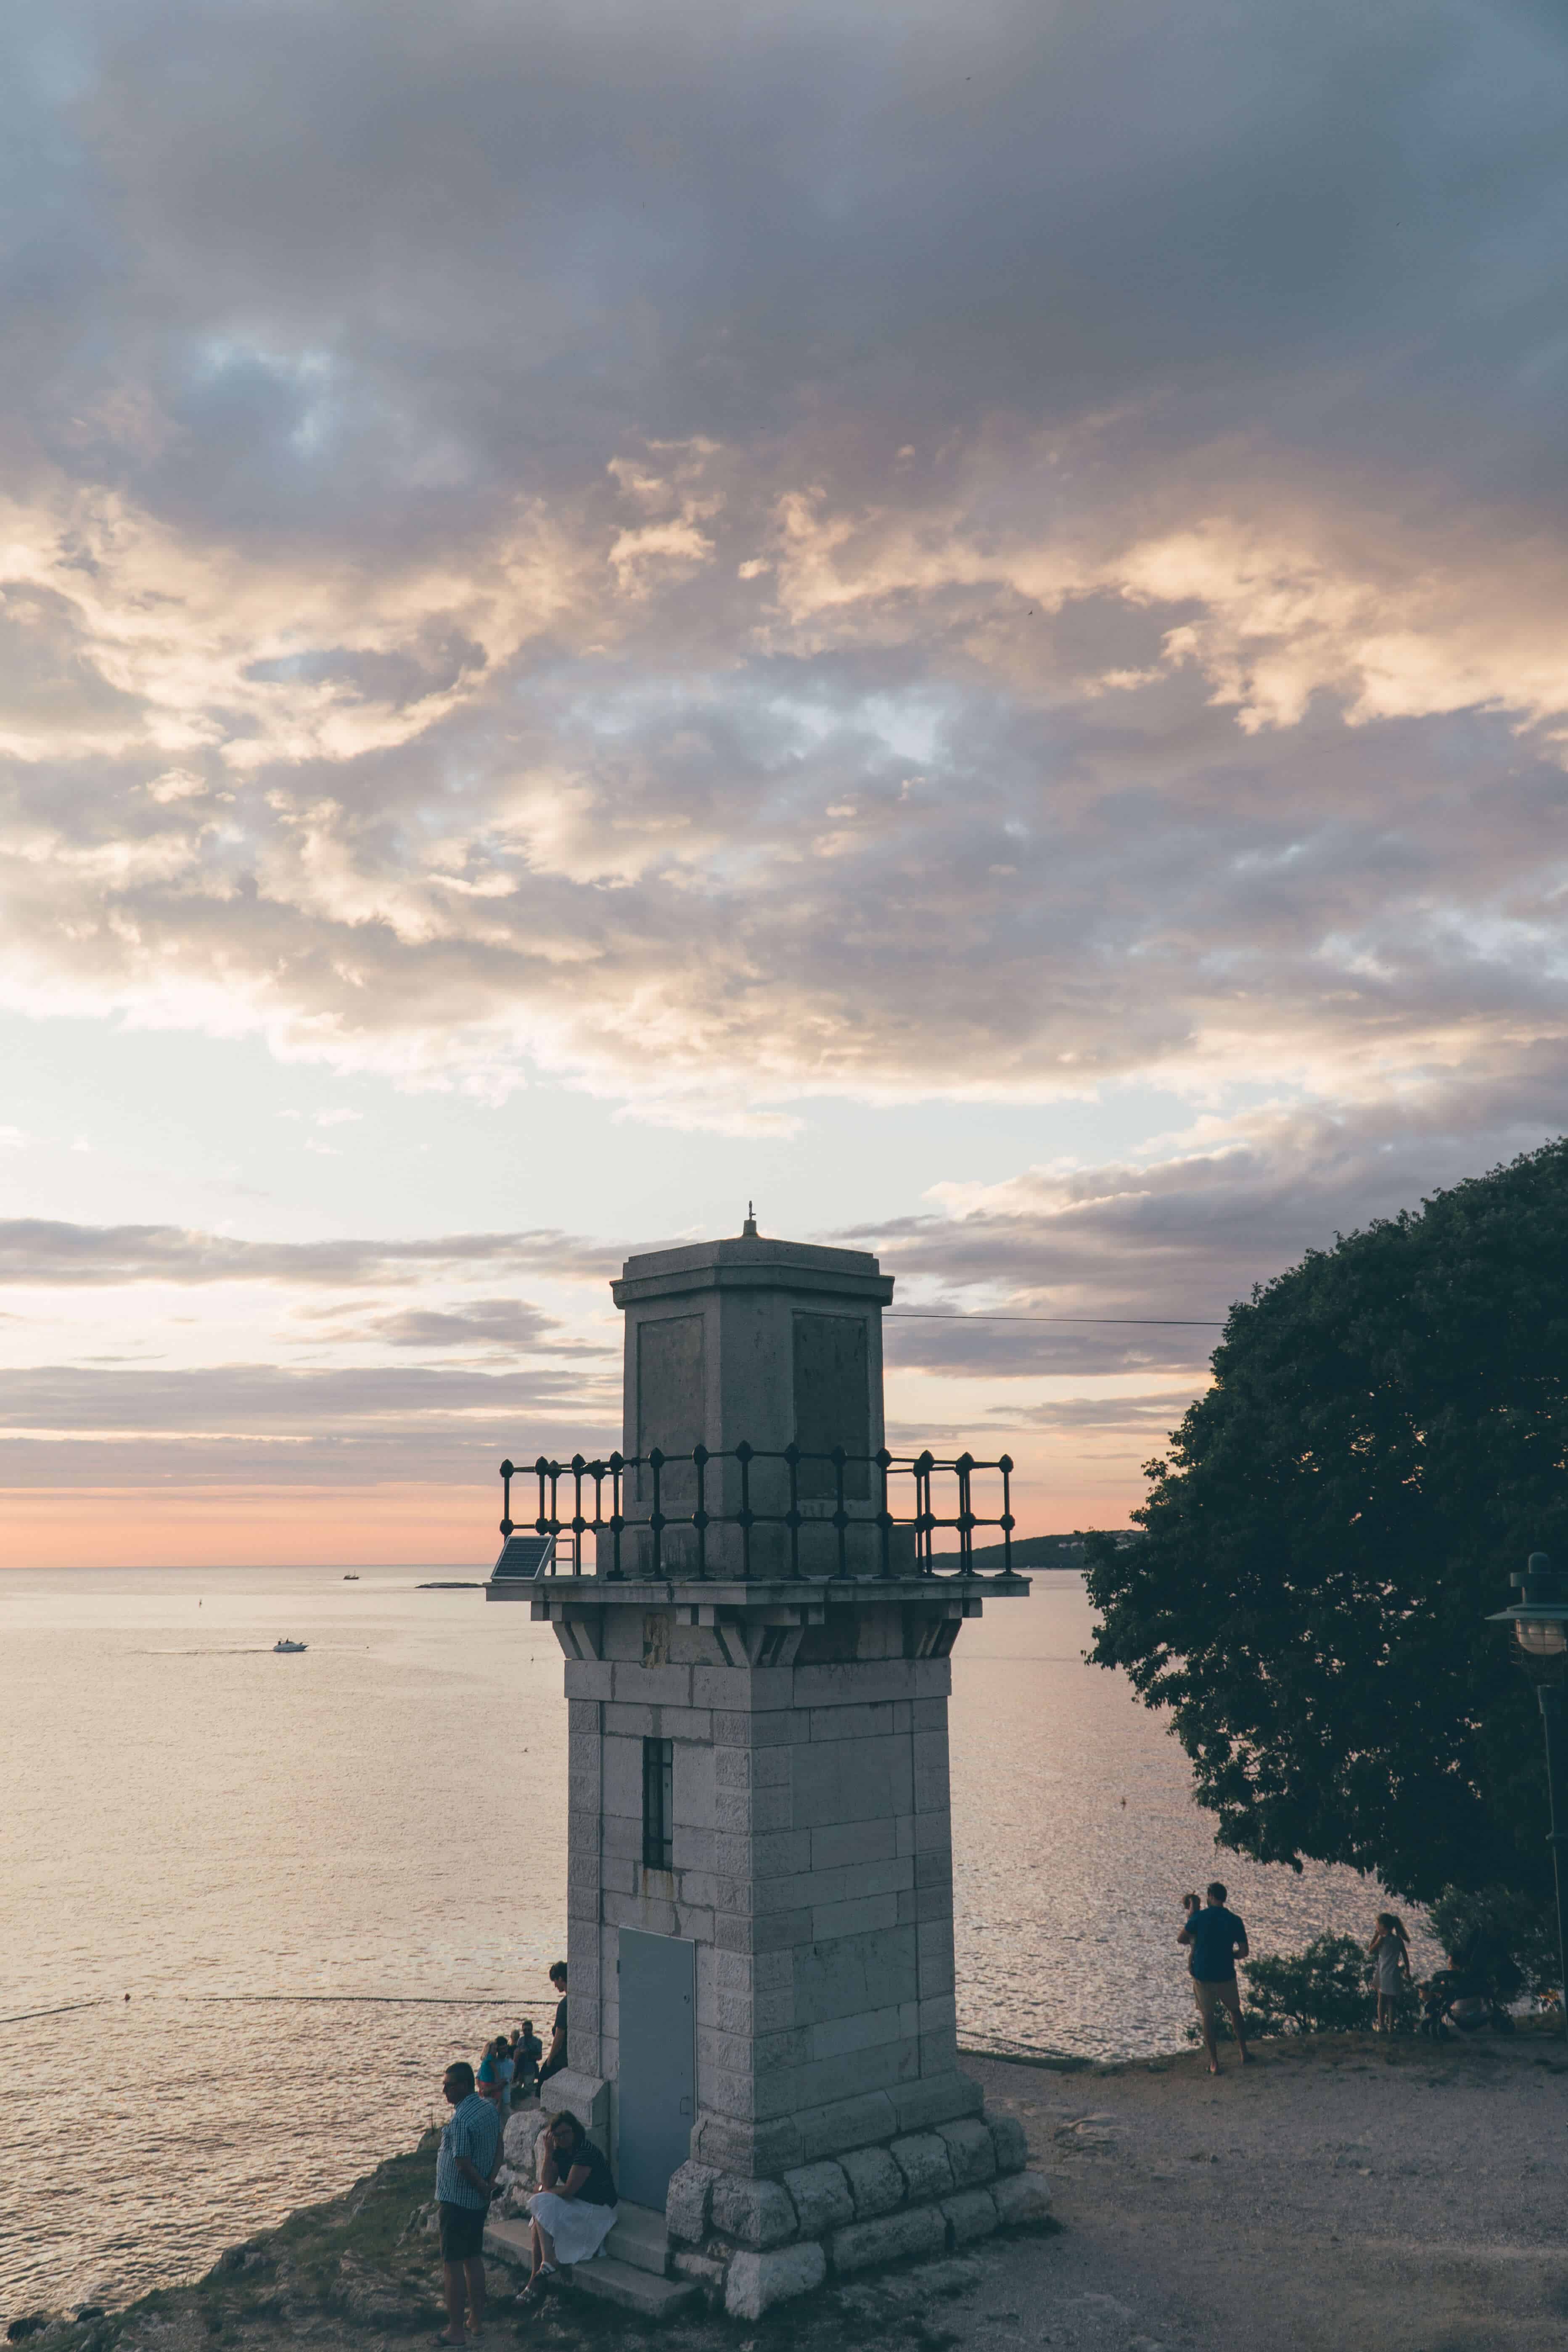 Istria Croatia in 20 Photos | Lighthouse in Rovinj | The Republic of Rose | #Croatia #Istria #Pula #Rovinj